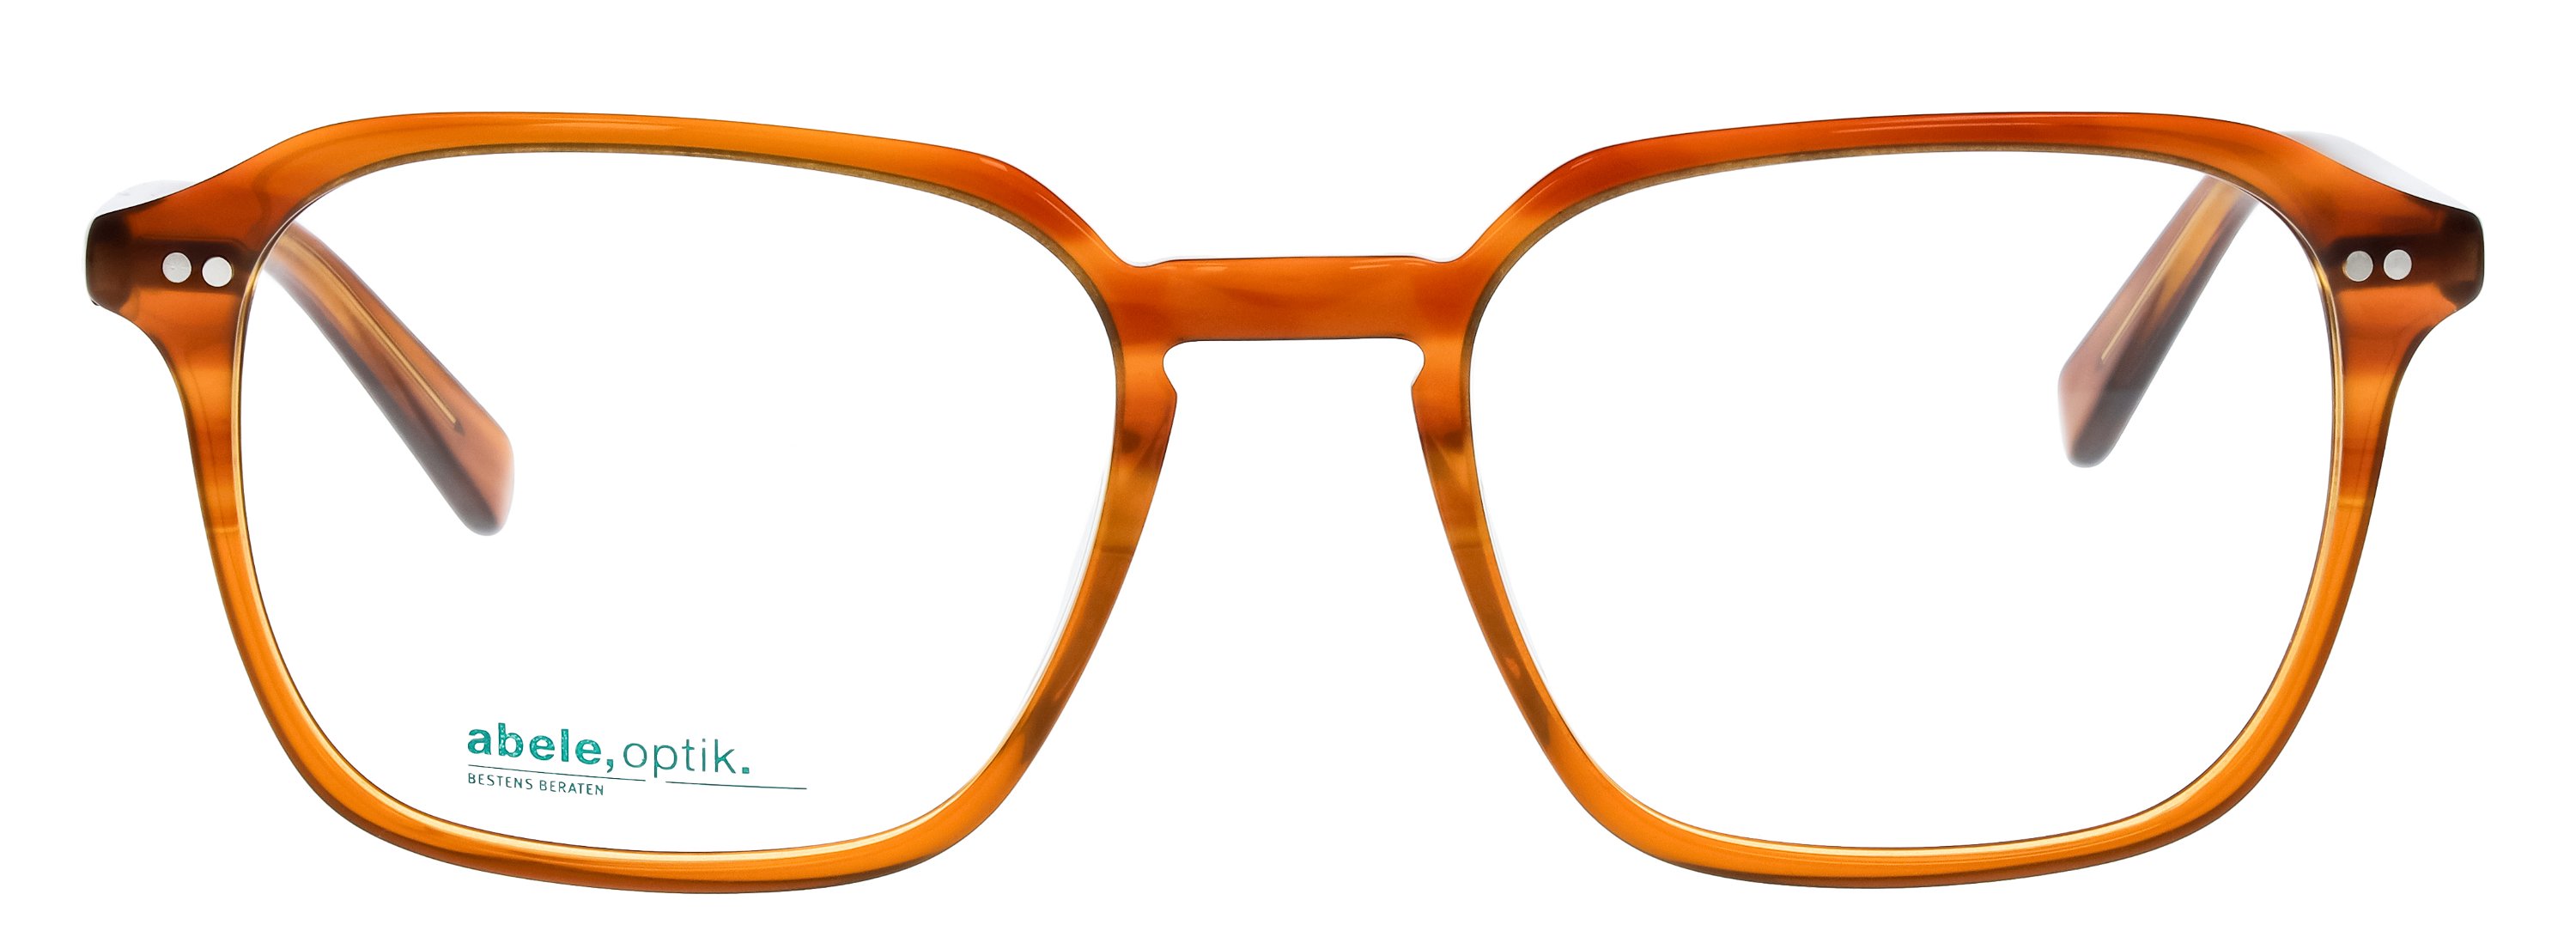 Das Bild zeigt die Korrektionsbrille 148532 von der Marke Abele Optik in karamellbraun.